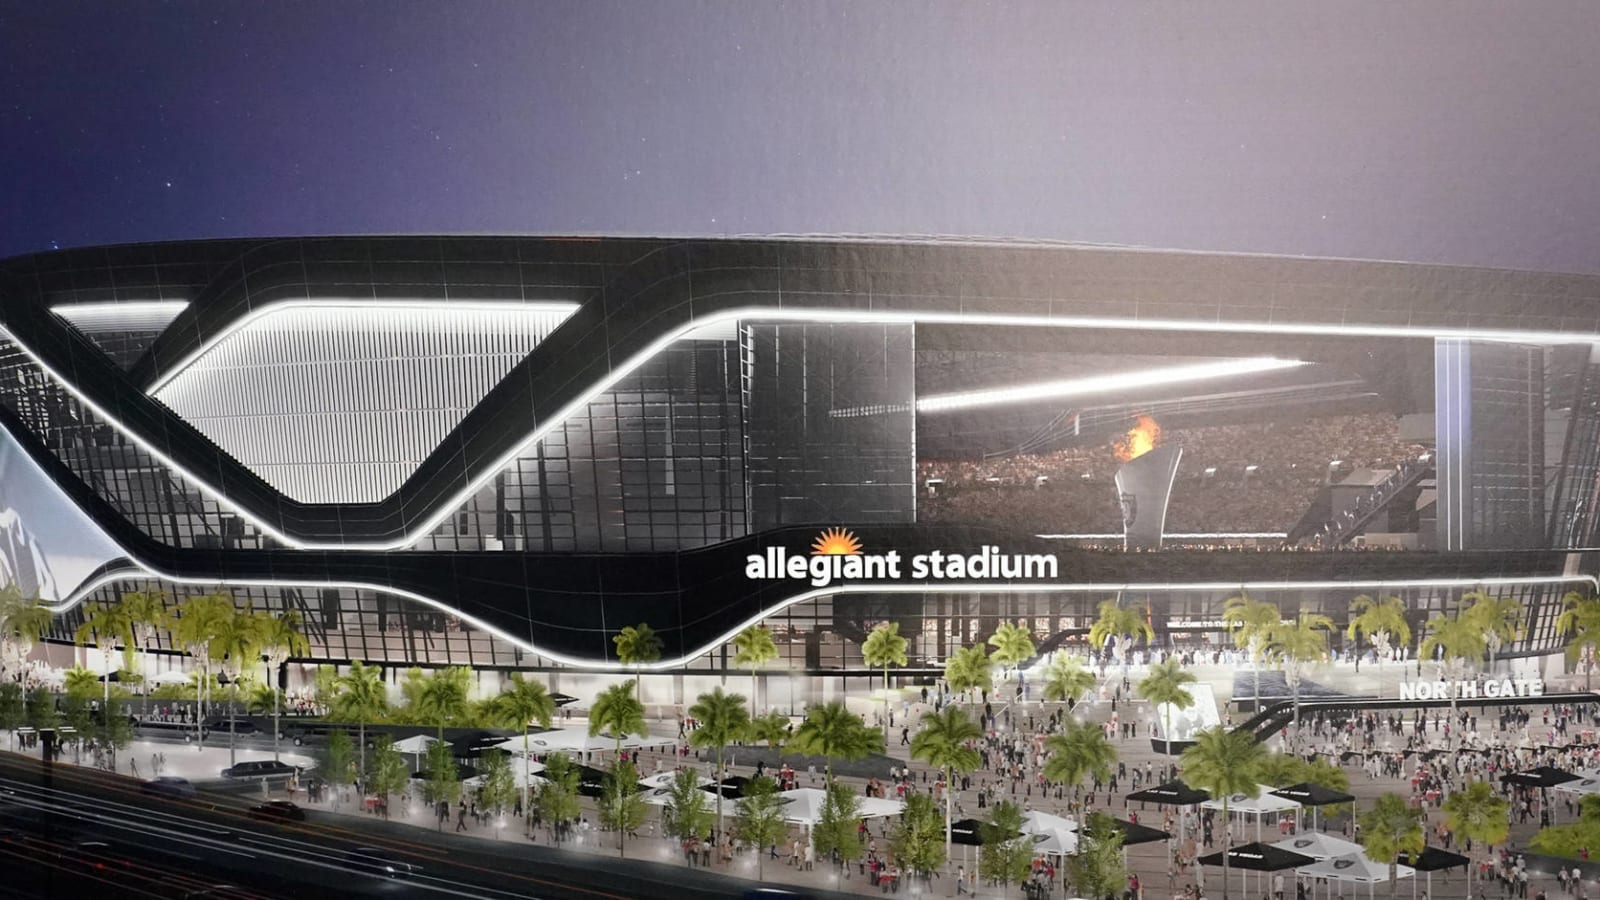 Watch: Raiders’ Allegiant Stadium is amazing lit up